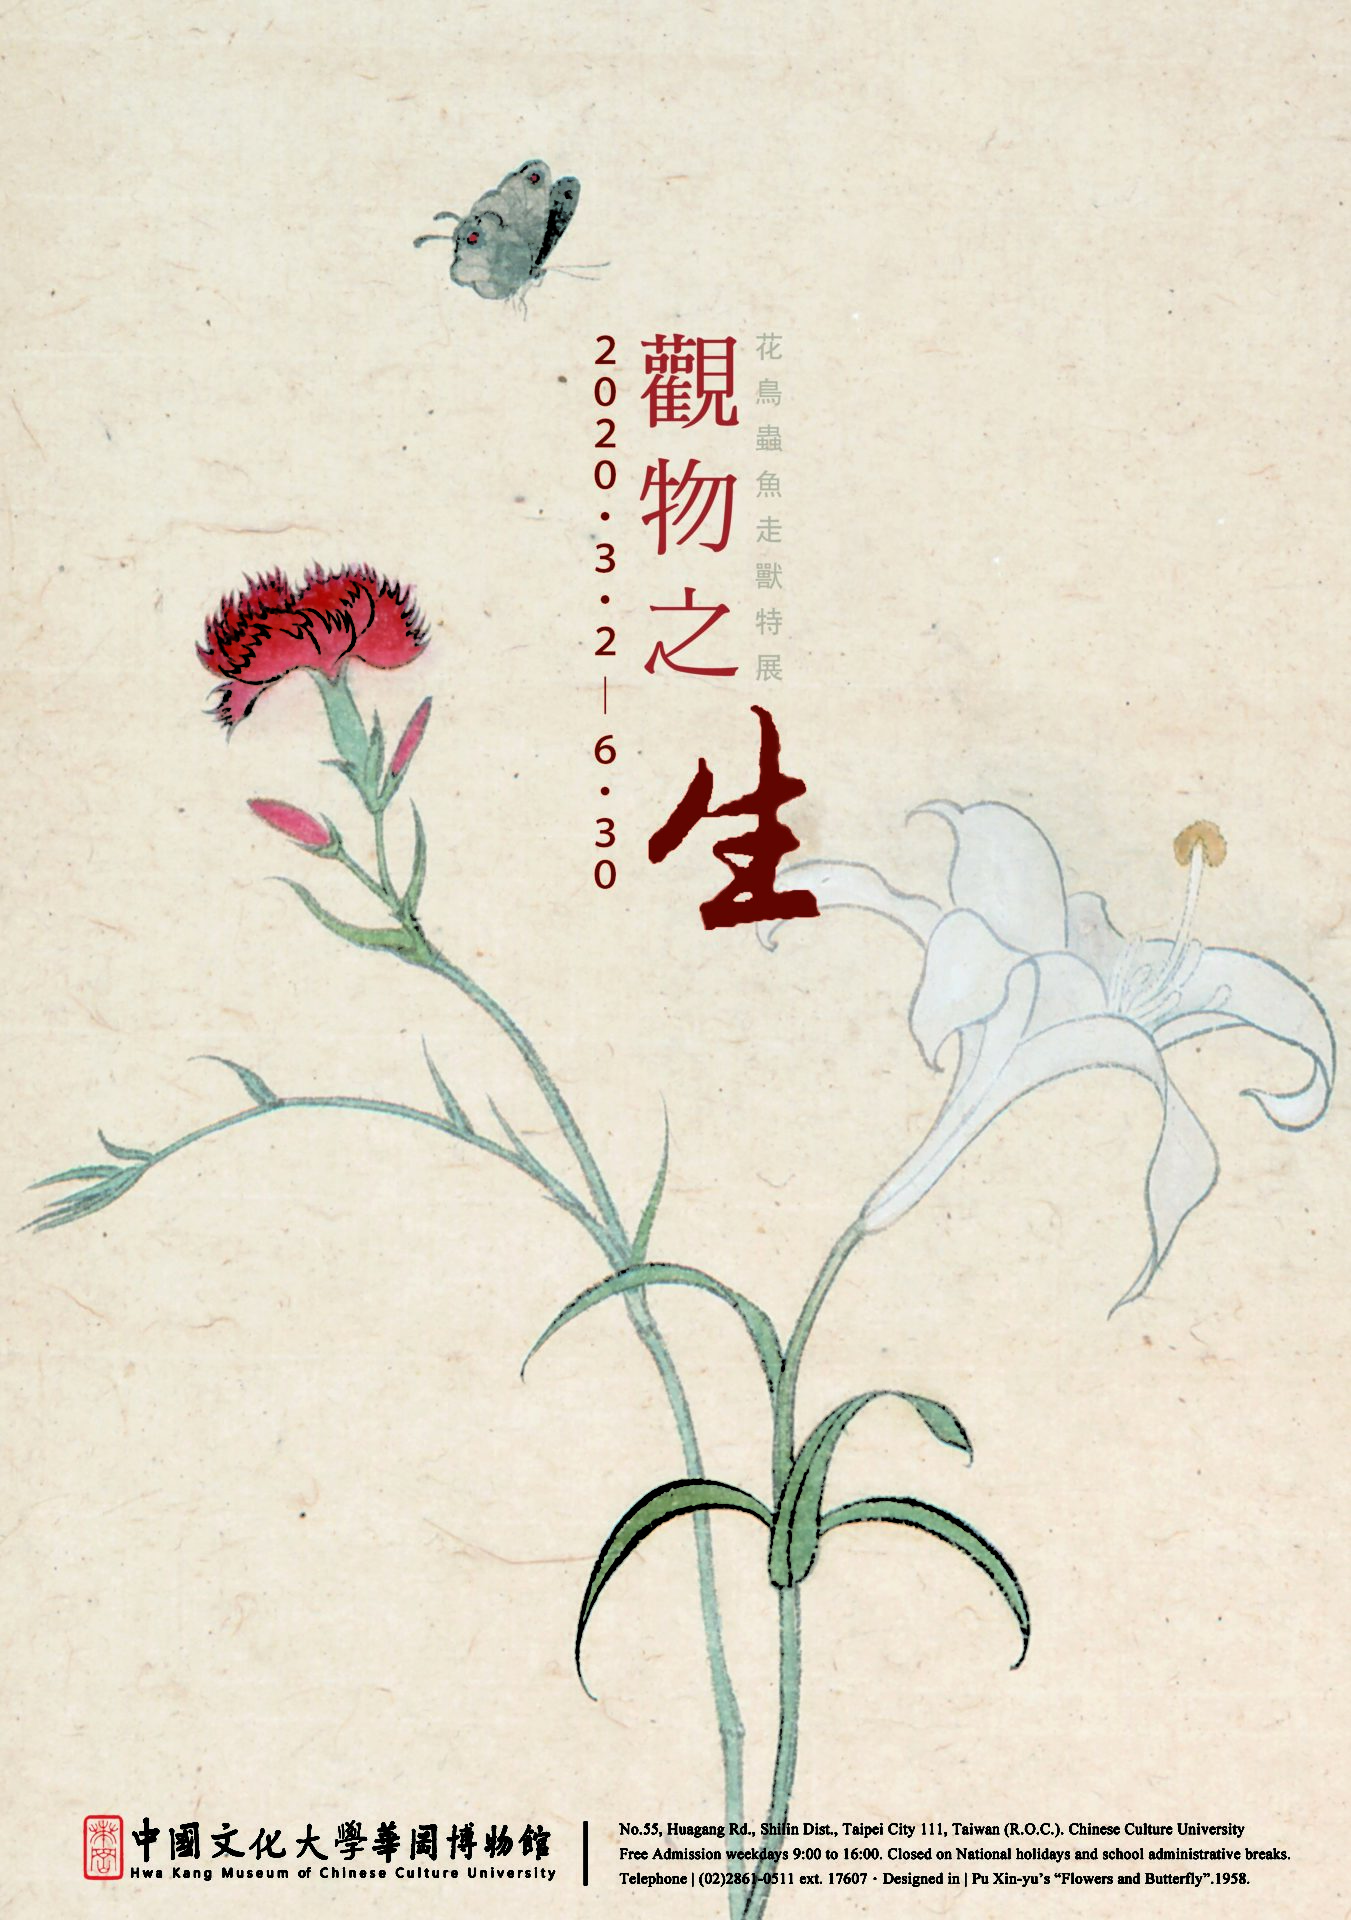 中國文化大學華岡博物館：2020/03/02-2020/06/30【觀物之生~花鳥蟲魚走獸特展】